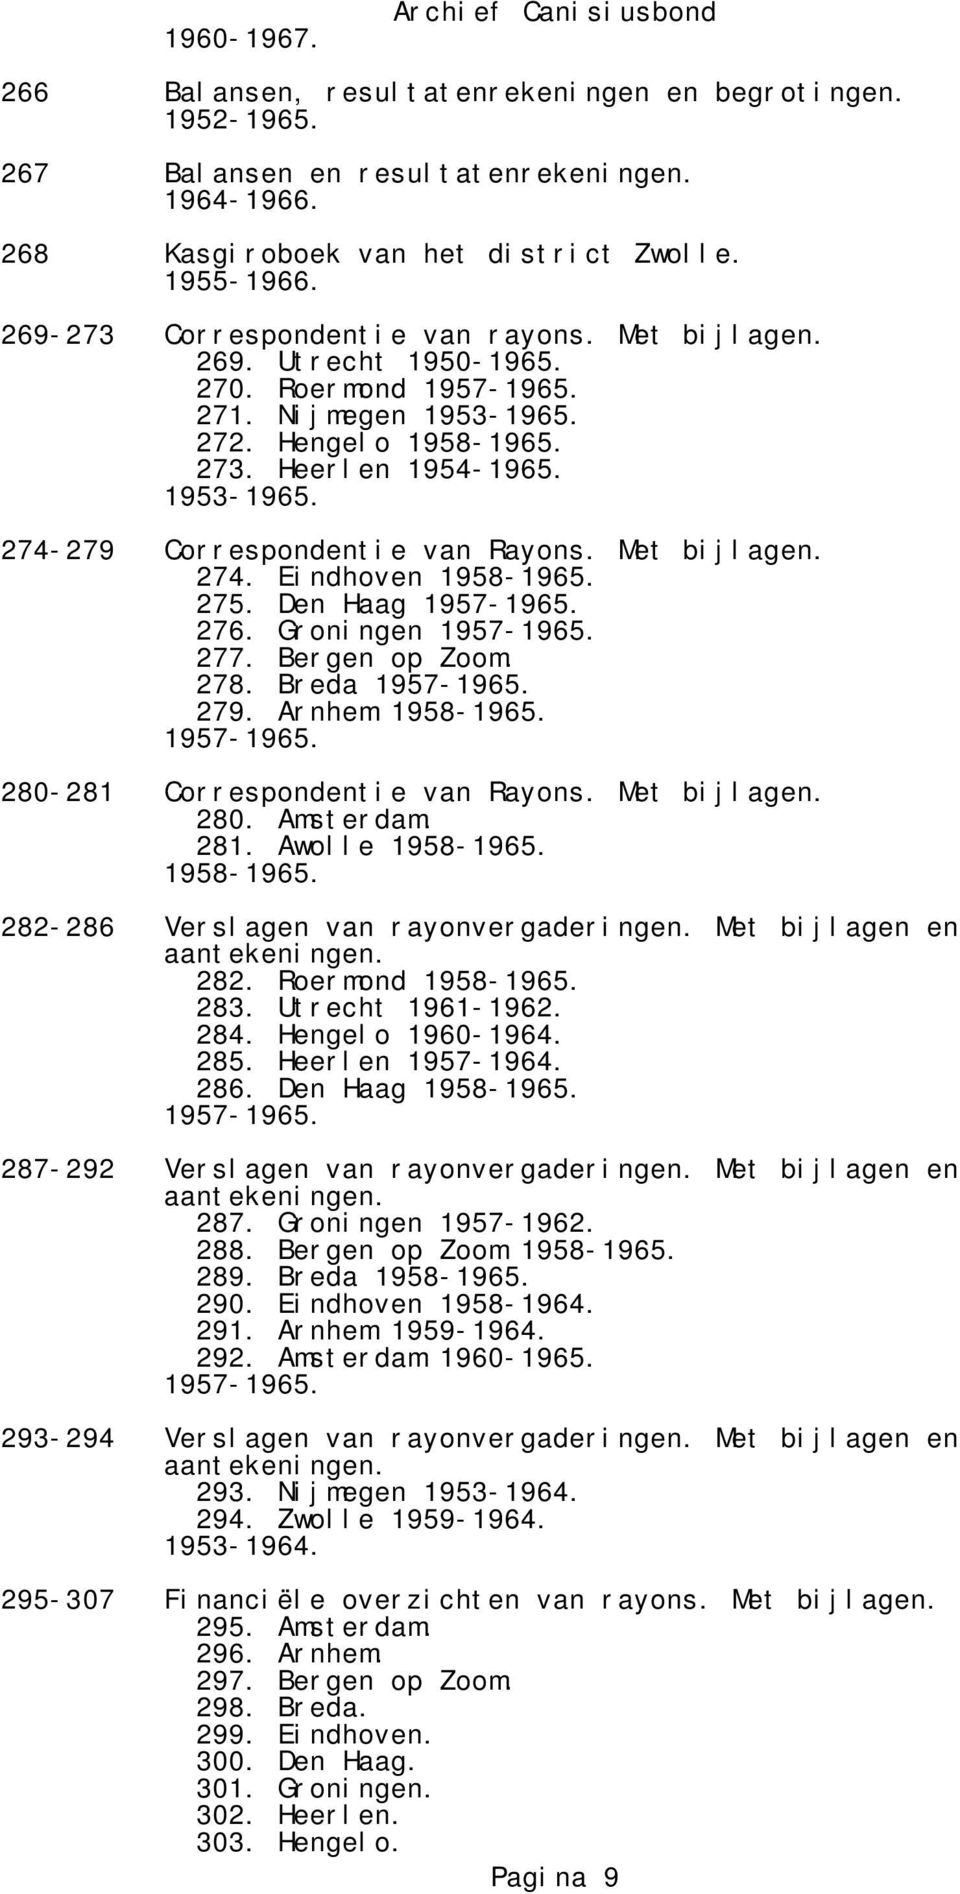 Met bijlagen. 274. Eindhoven 1958-1965. 275. Den Haag 1957-1965. 276. Groningen 1957-1965. 277. Bergen op Zoom. 278. Breda 1957-1965. 279. Arnhem 1958-1965. 1957-1965. 280-281 Correspondentie van Rayons.